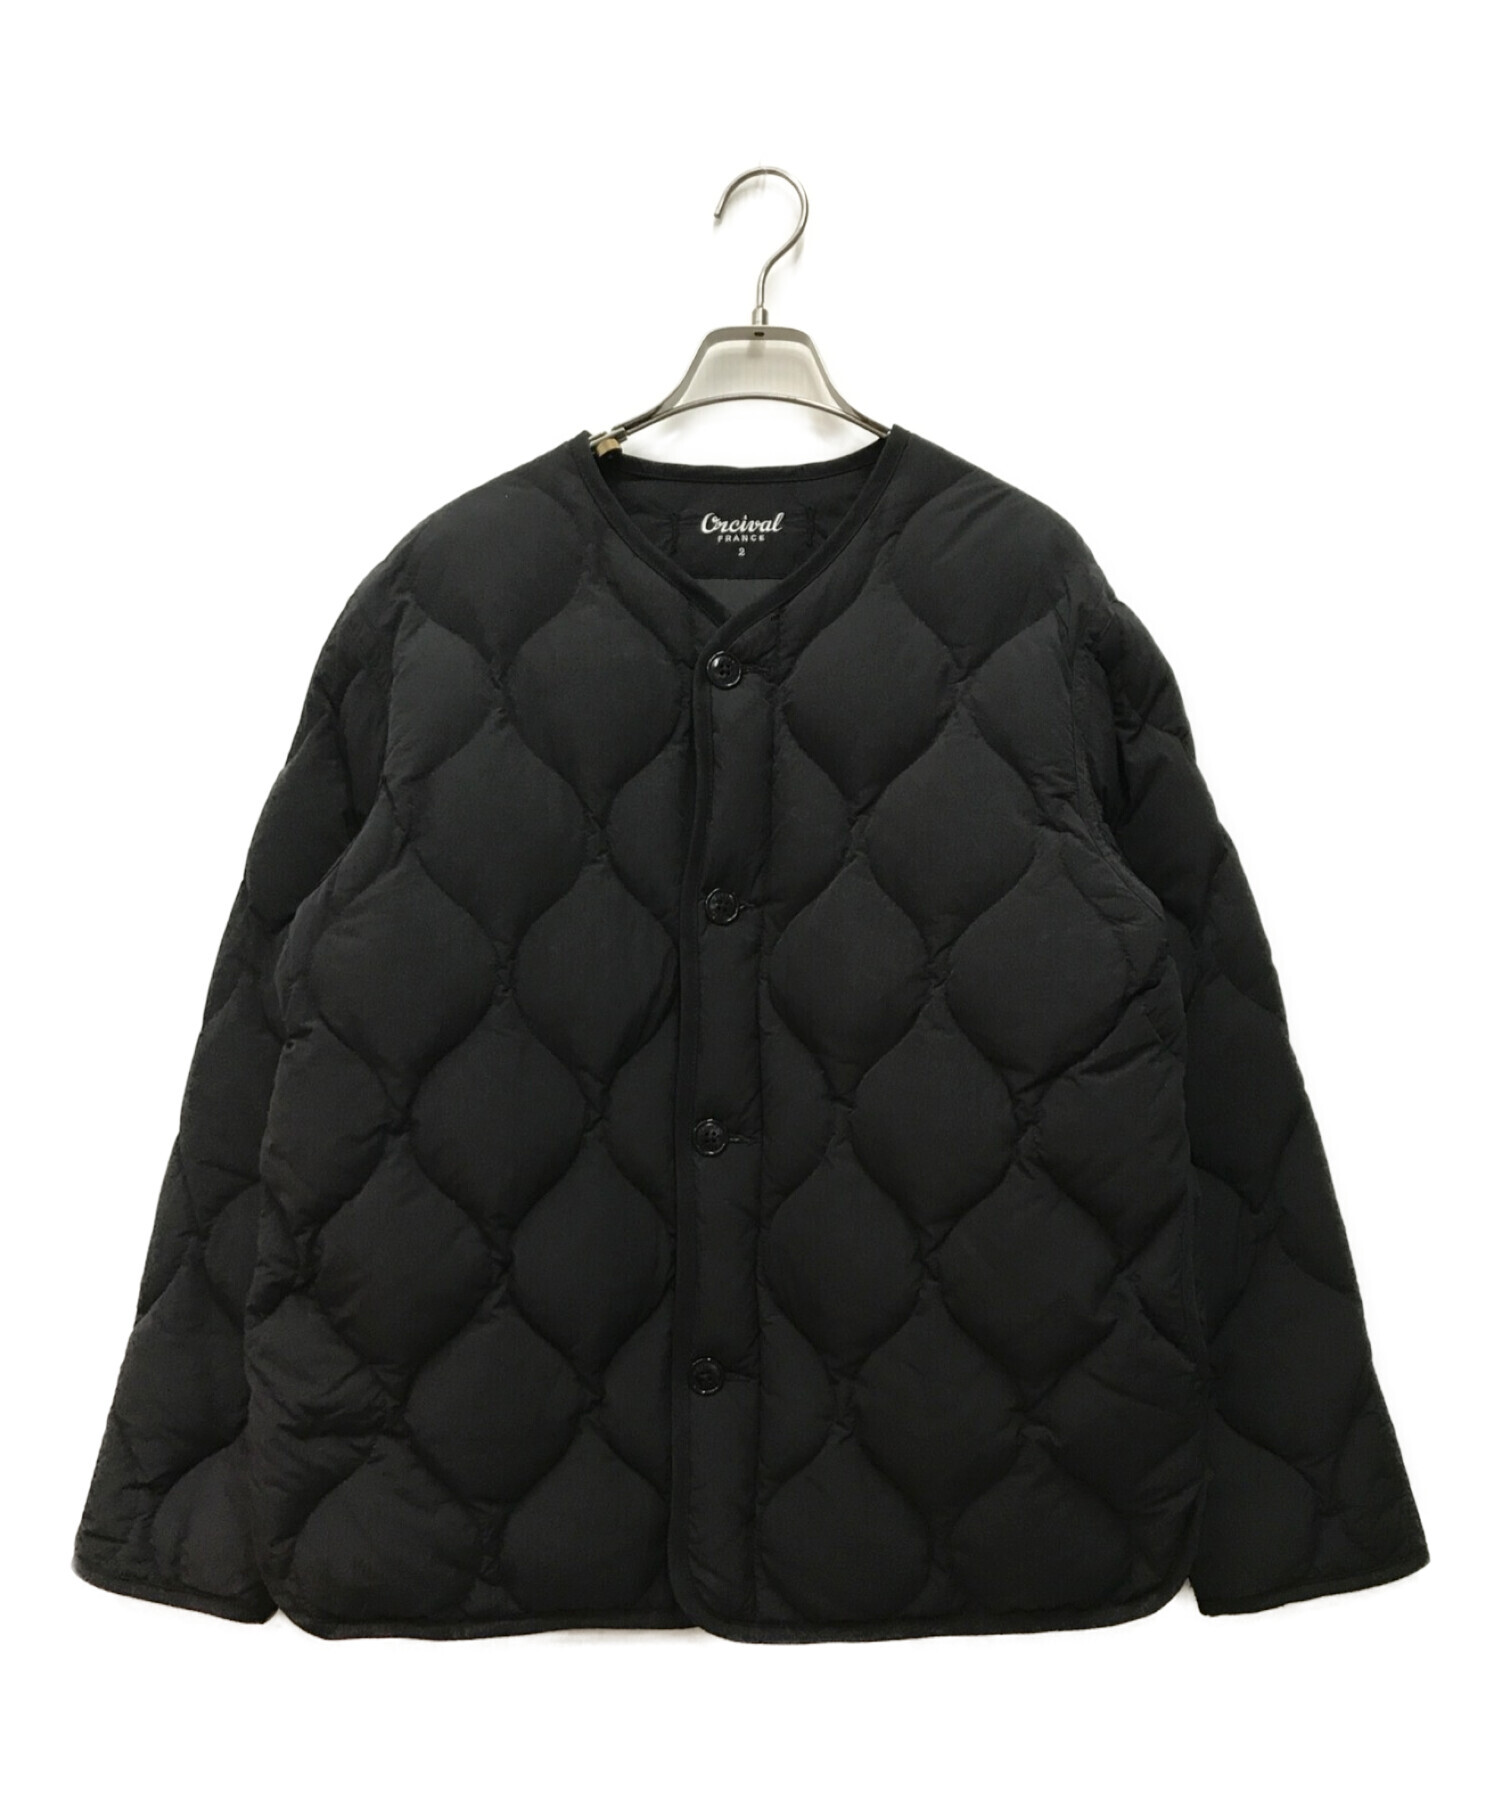 ORCIVAL (オーシバル) キルティングジャケット ブラック サイズ:2